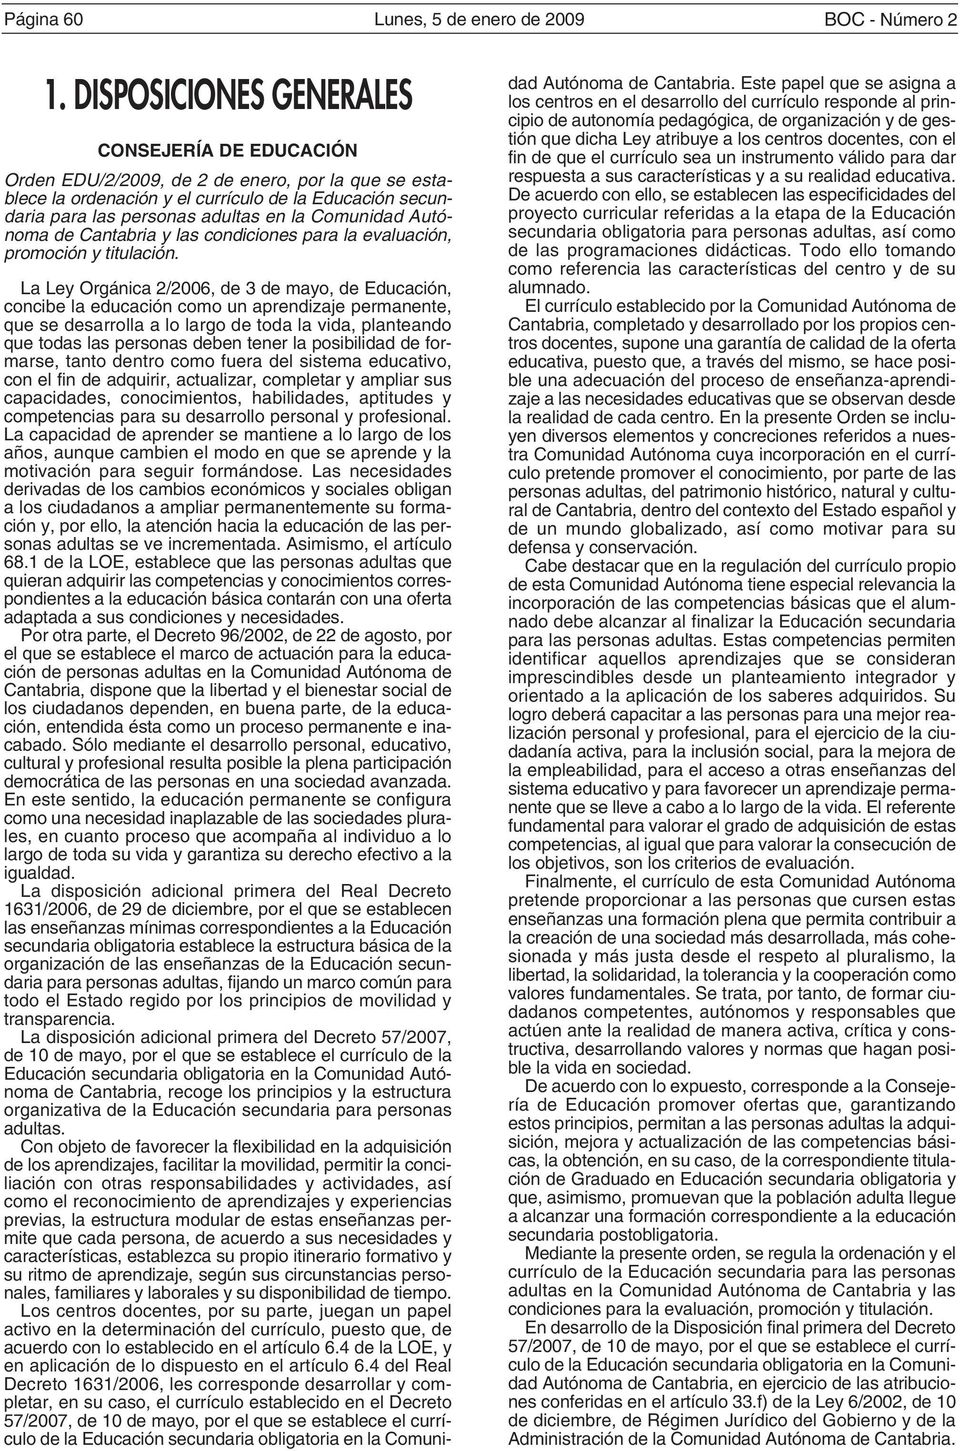 Comunidad Autónoma de Cantabria y las condiciones para la evaluación, promoción y titulación.